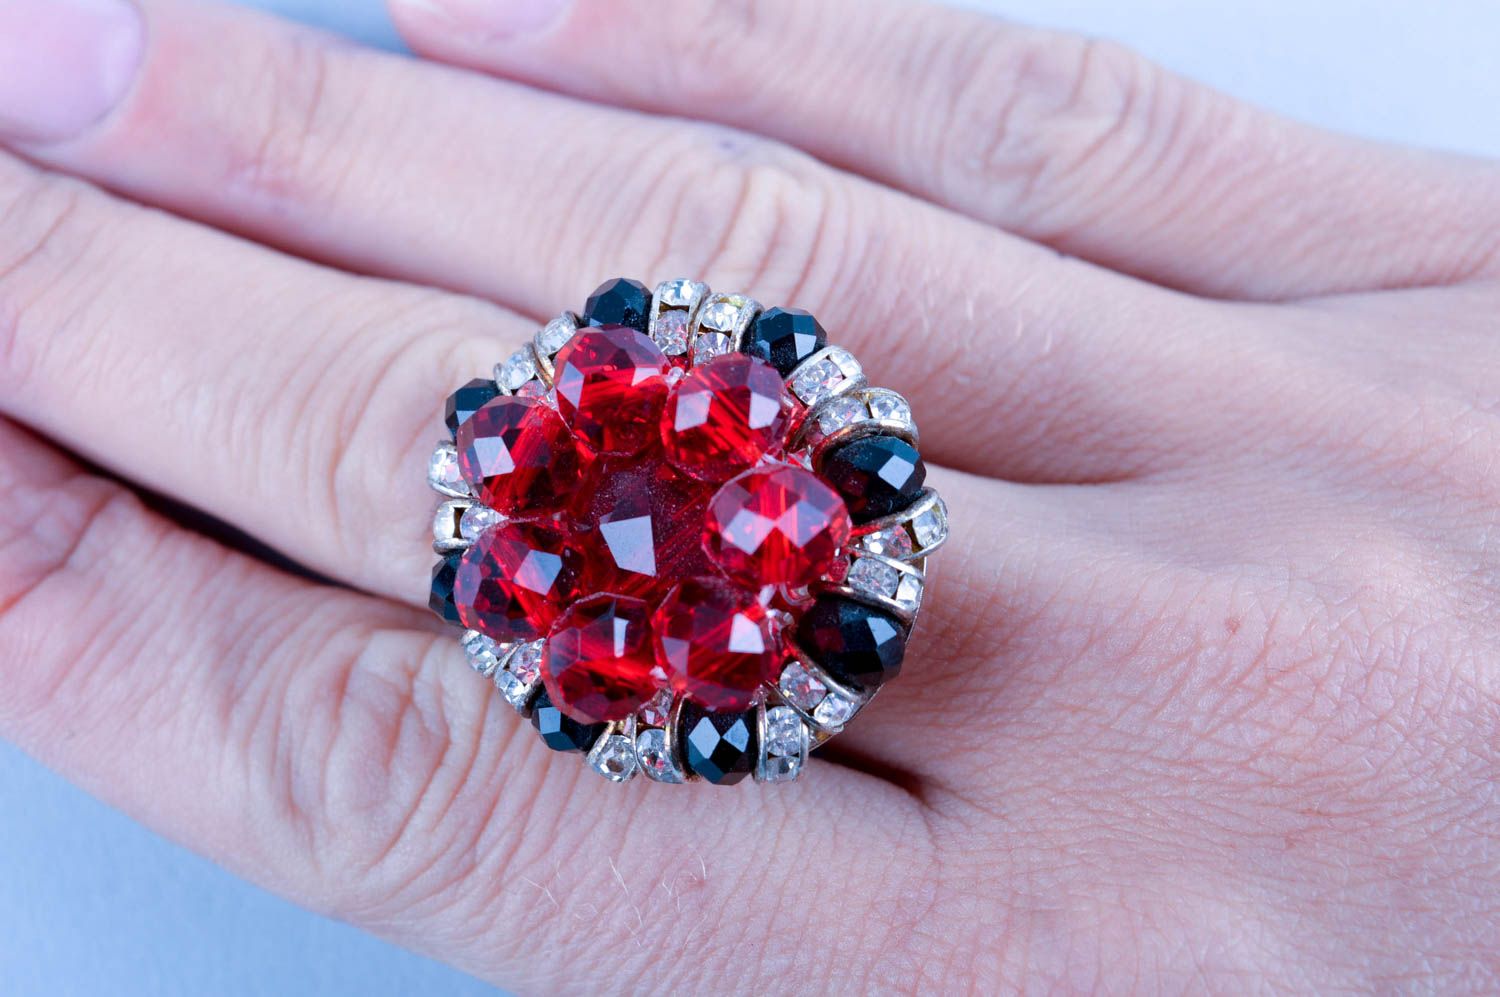 Кольцо ручной работы модное кольцо с хрусталем кольцо из металла красивое фото 5